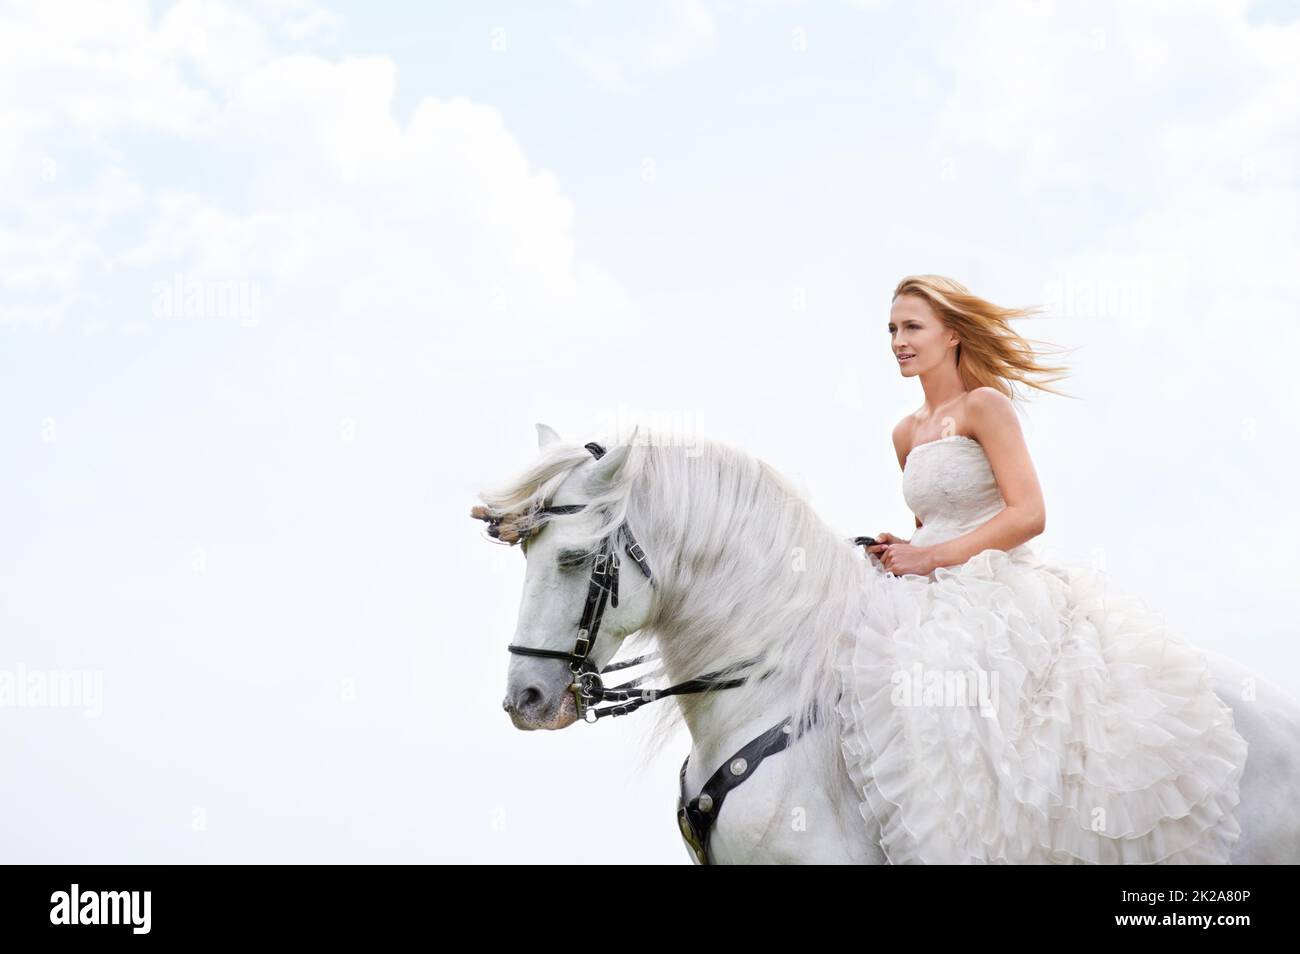 Sie kam zu ihrer Hochzeit auf dem Pferderücken. Eine attraktive junge Braut draußen mit ihrem Pferd. Stockfoto